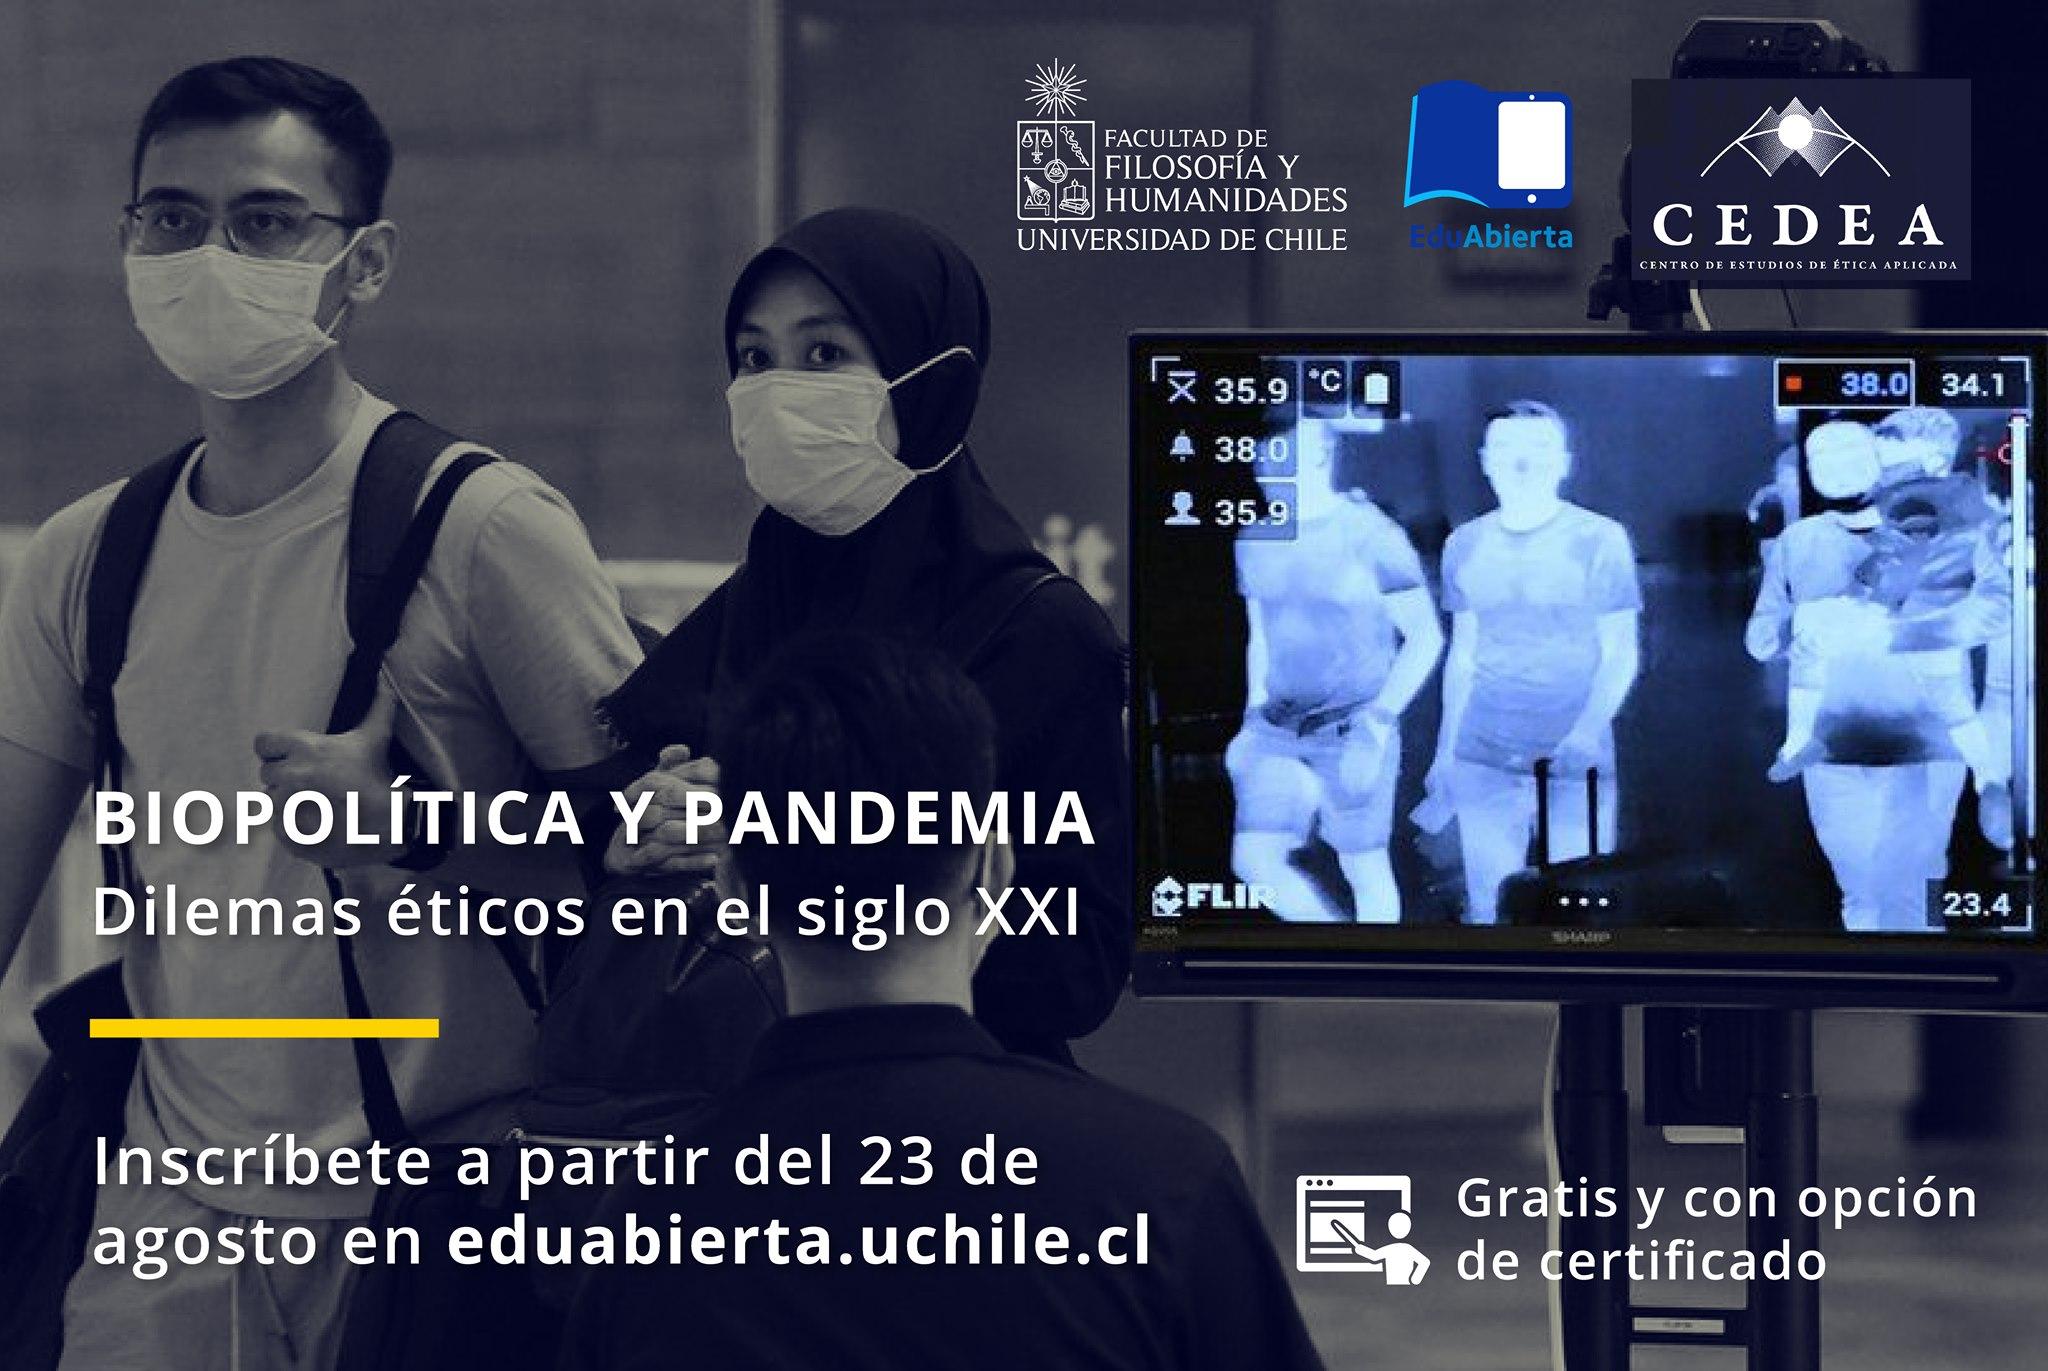 Inscripciones abiertas para curso gratuito "Biopolítica y Pandemia: dilemas éticos del siglo XXI" de la Universidad de Chile